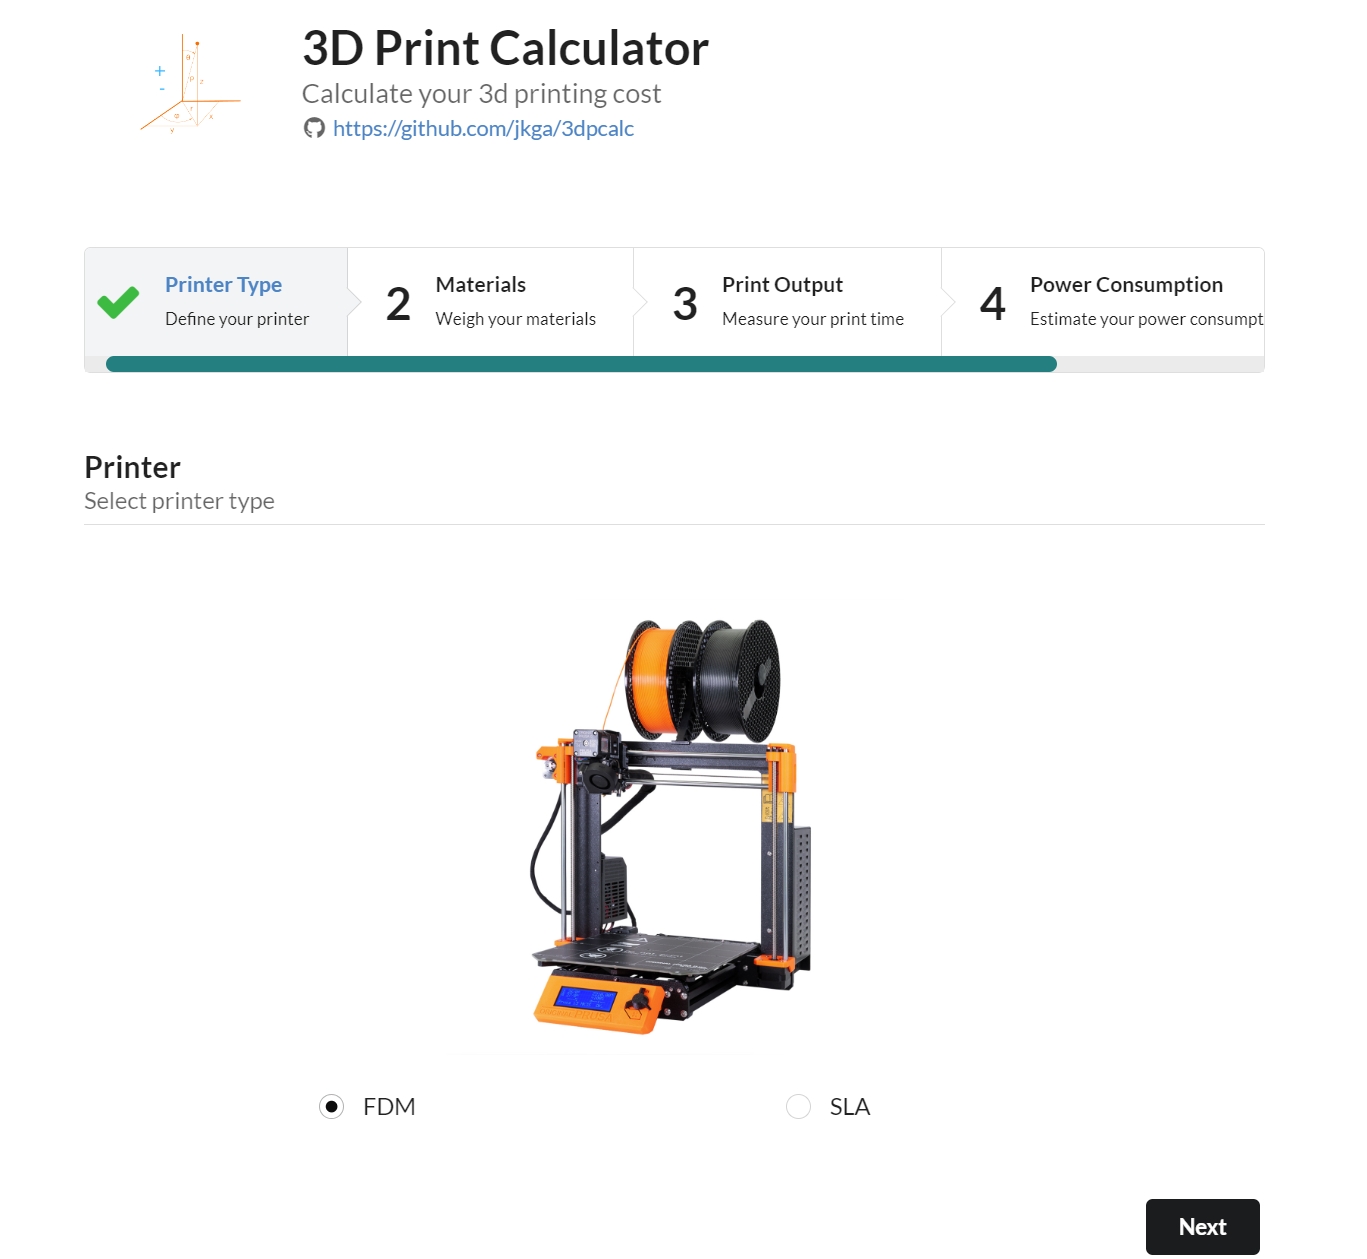 3dpcalc 3D Print Calculator